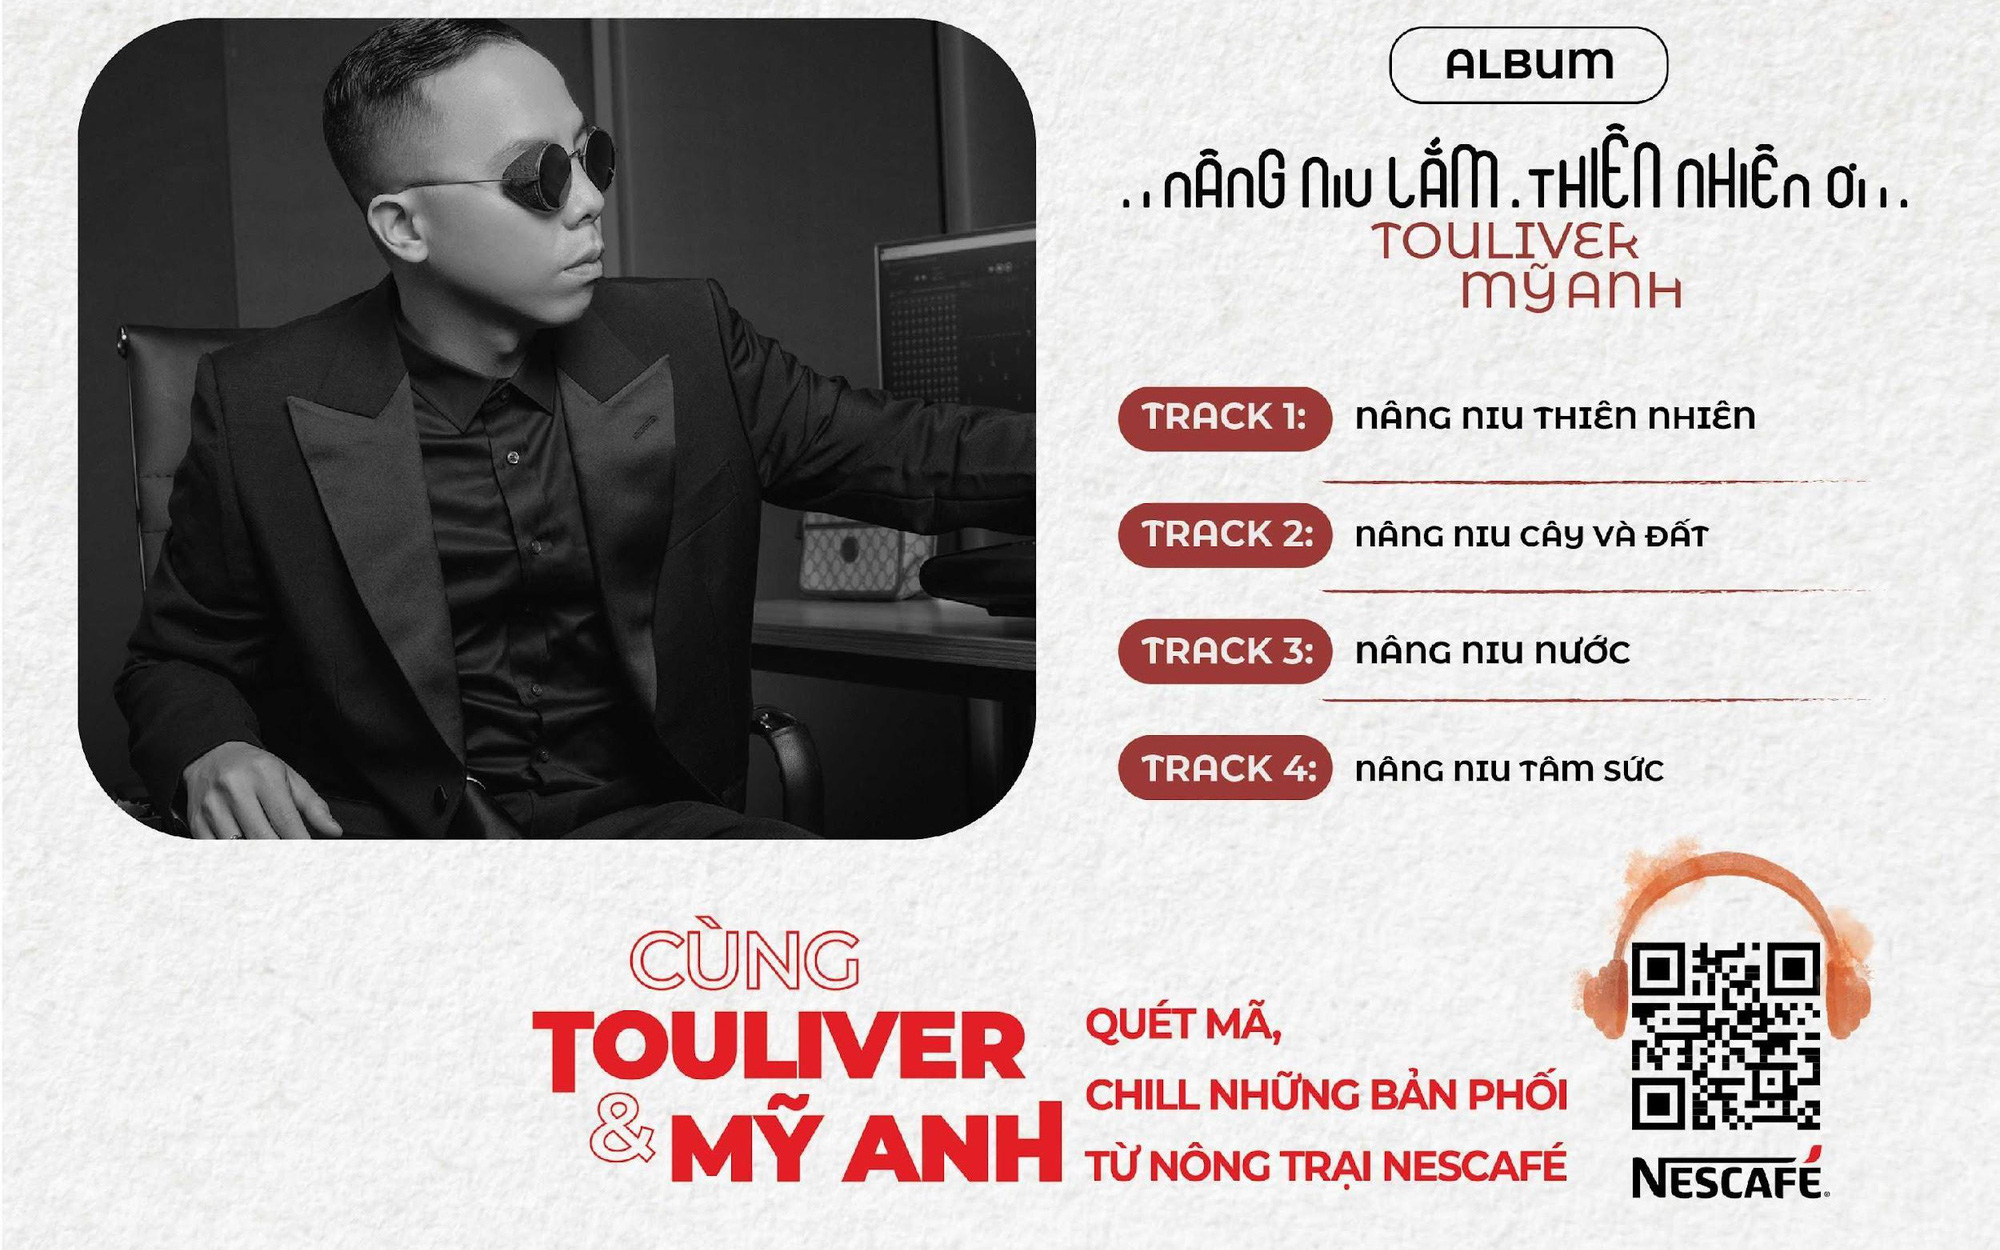 Touliver nói về album “Nâng Niu Lắm, Thiên Nhiên Ơi”: “Những điều gần gũi sẽ chạm đến trái tim khán giả”